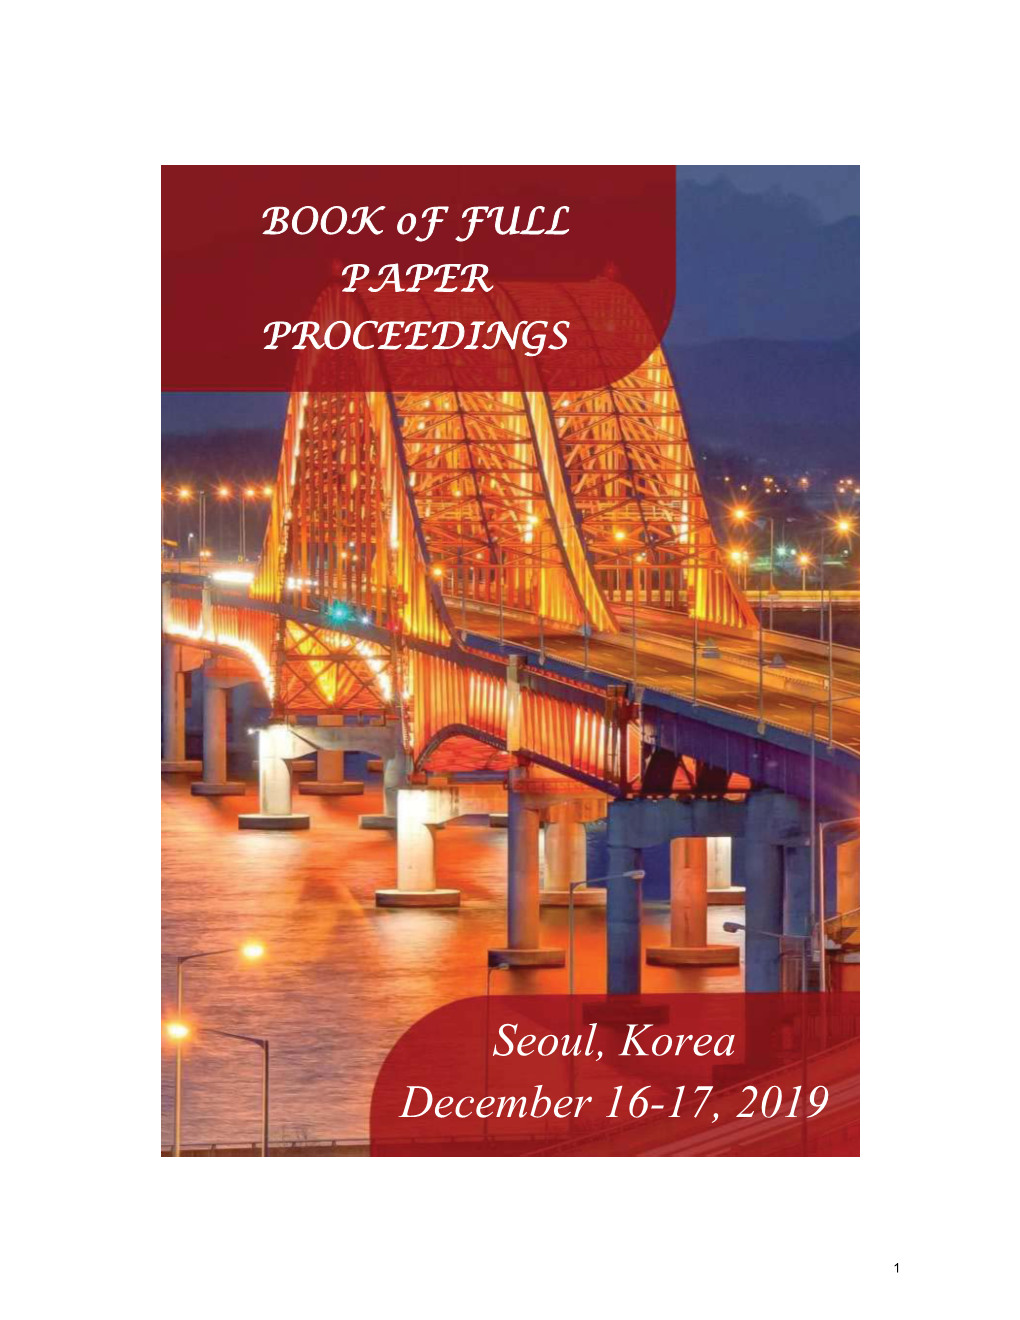 Seoul, Korea December 16-17, 2019 ISBN: 972-605-6421-76-0